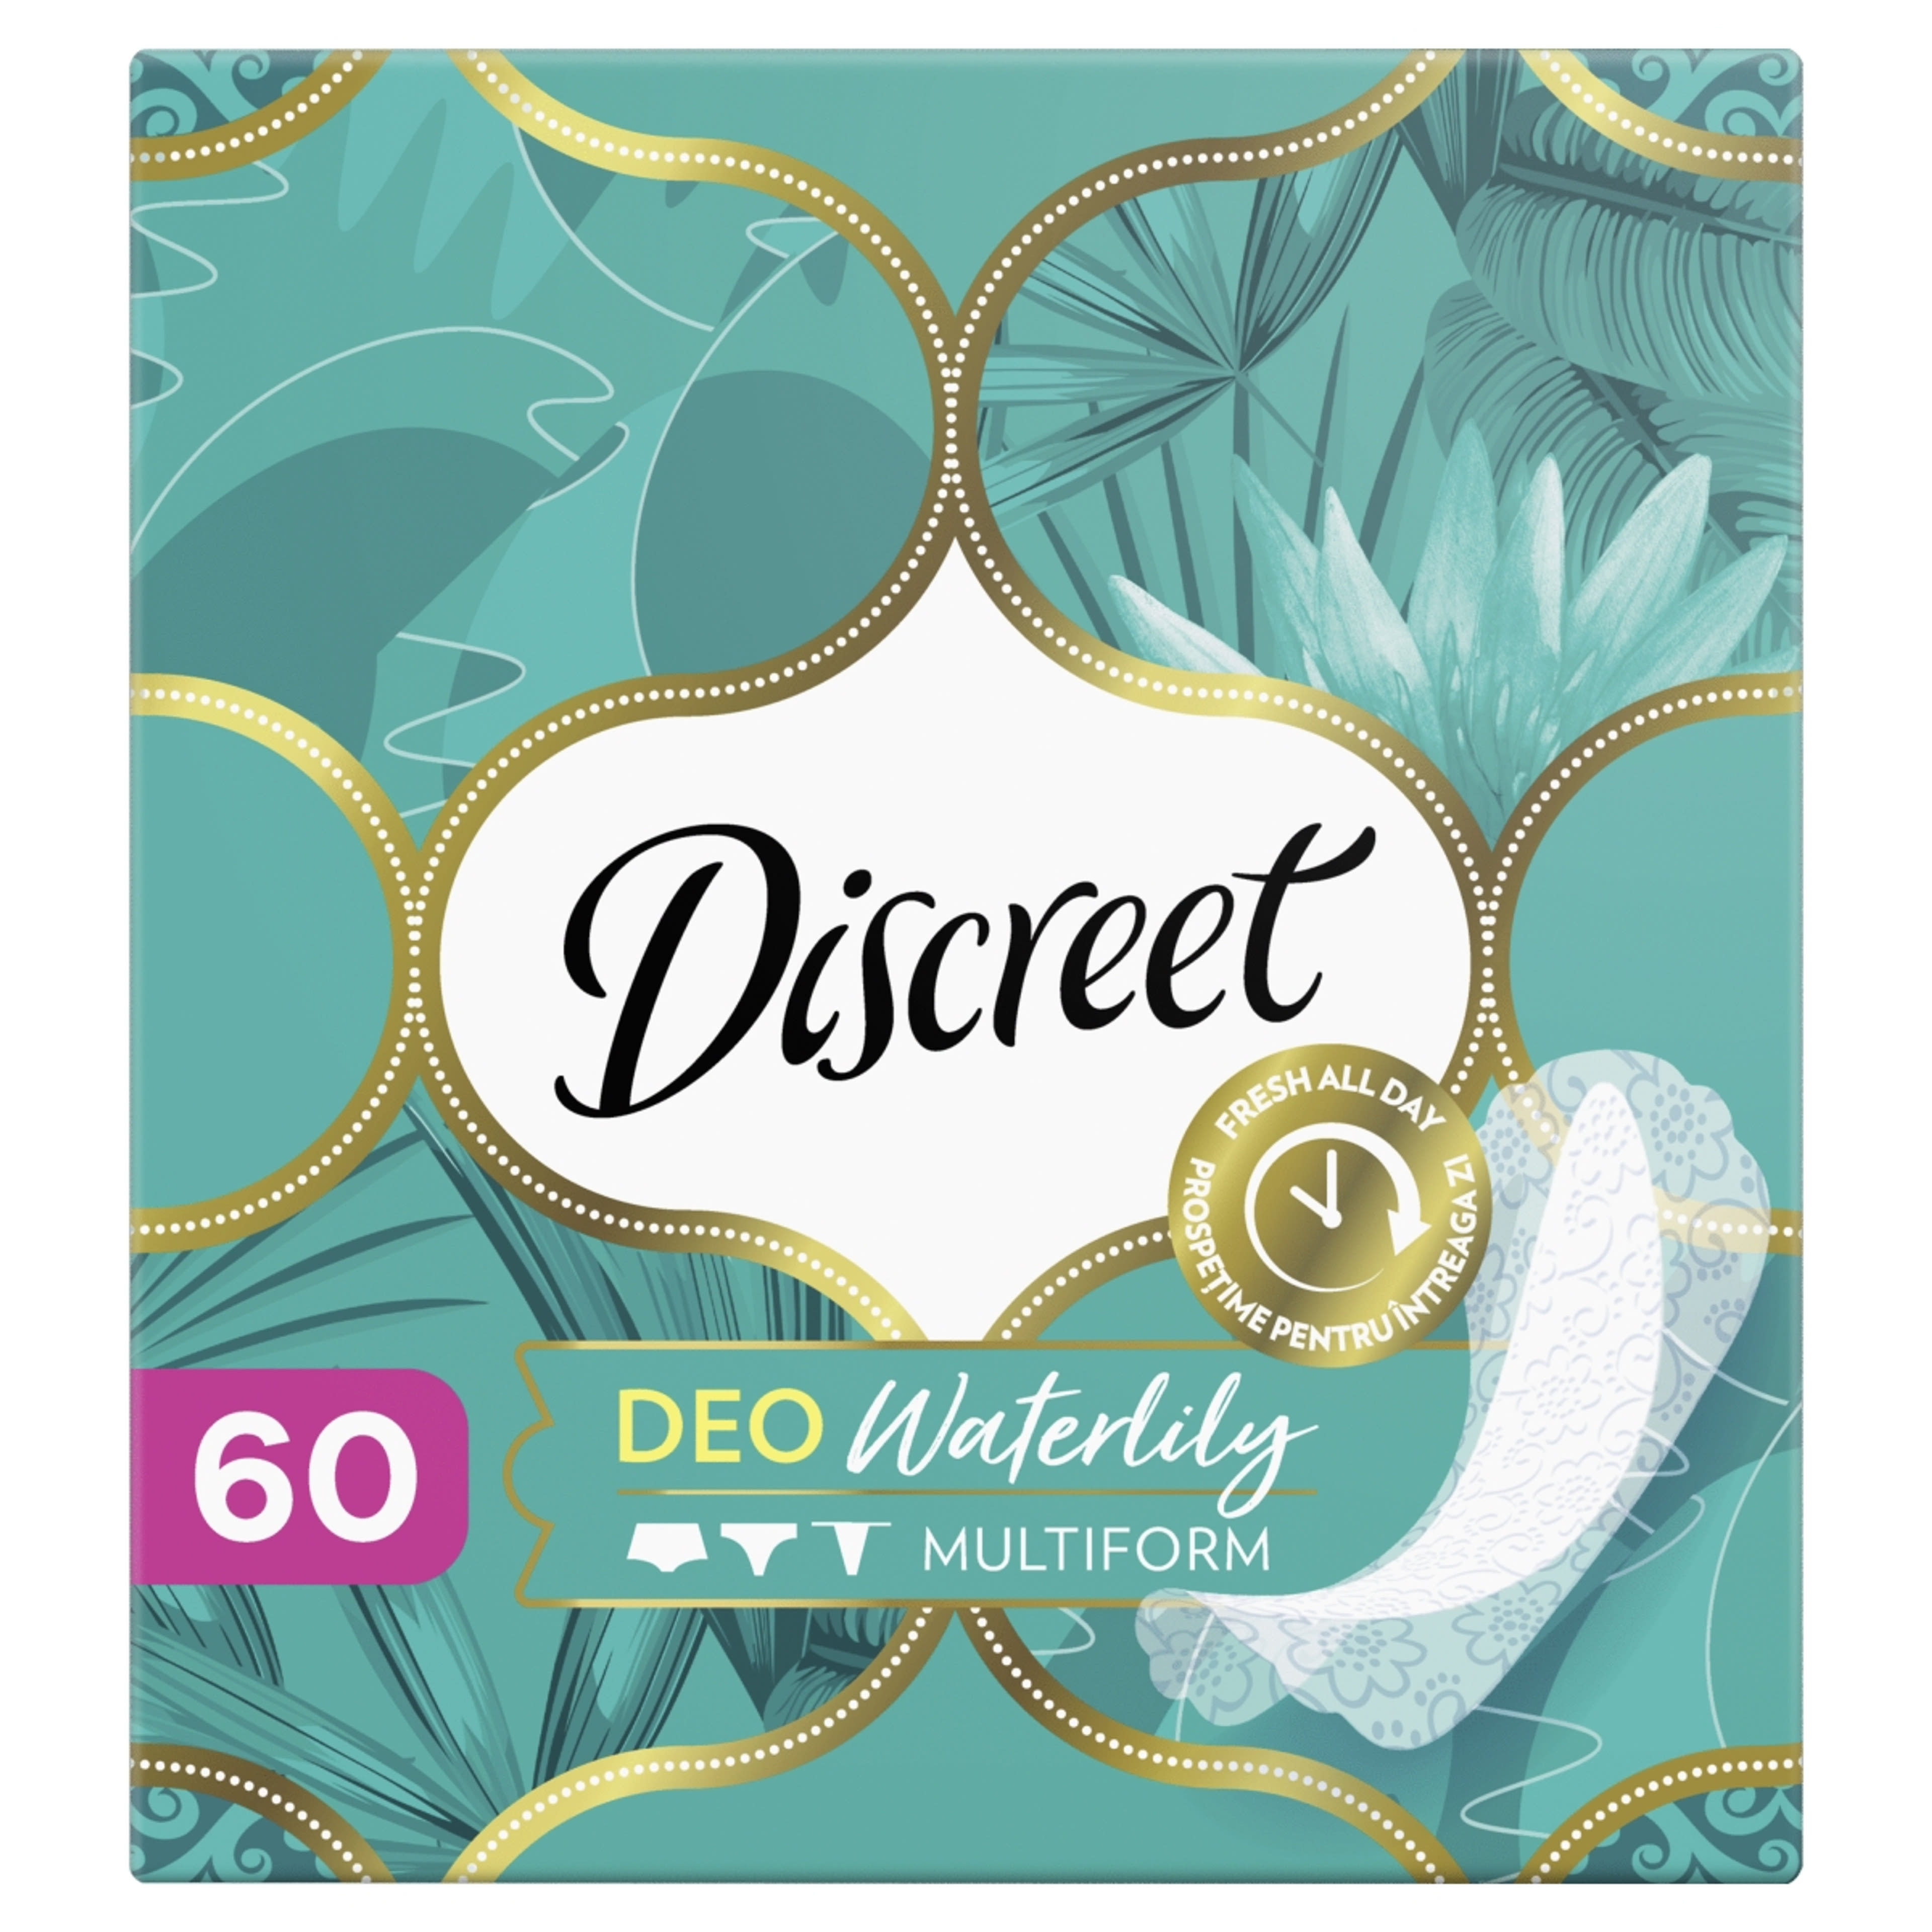 Discreet Waterlily tisztasági betét - 60 db